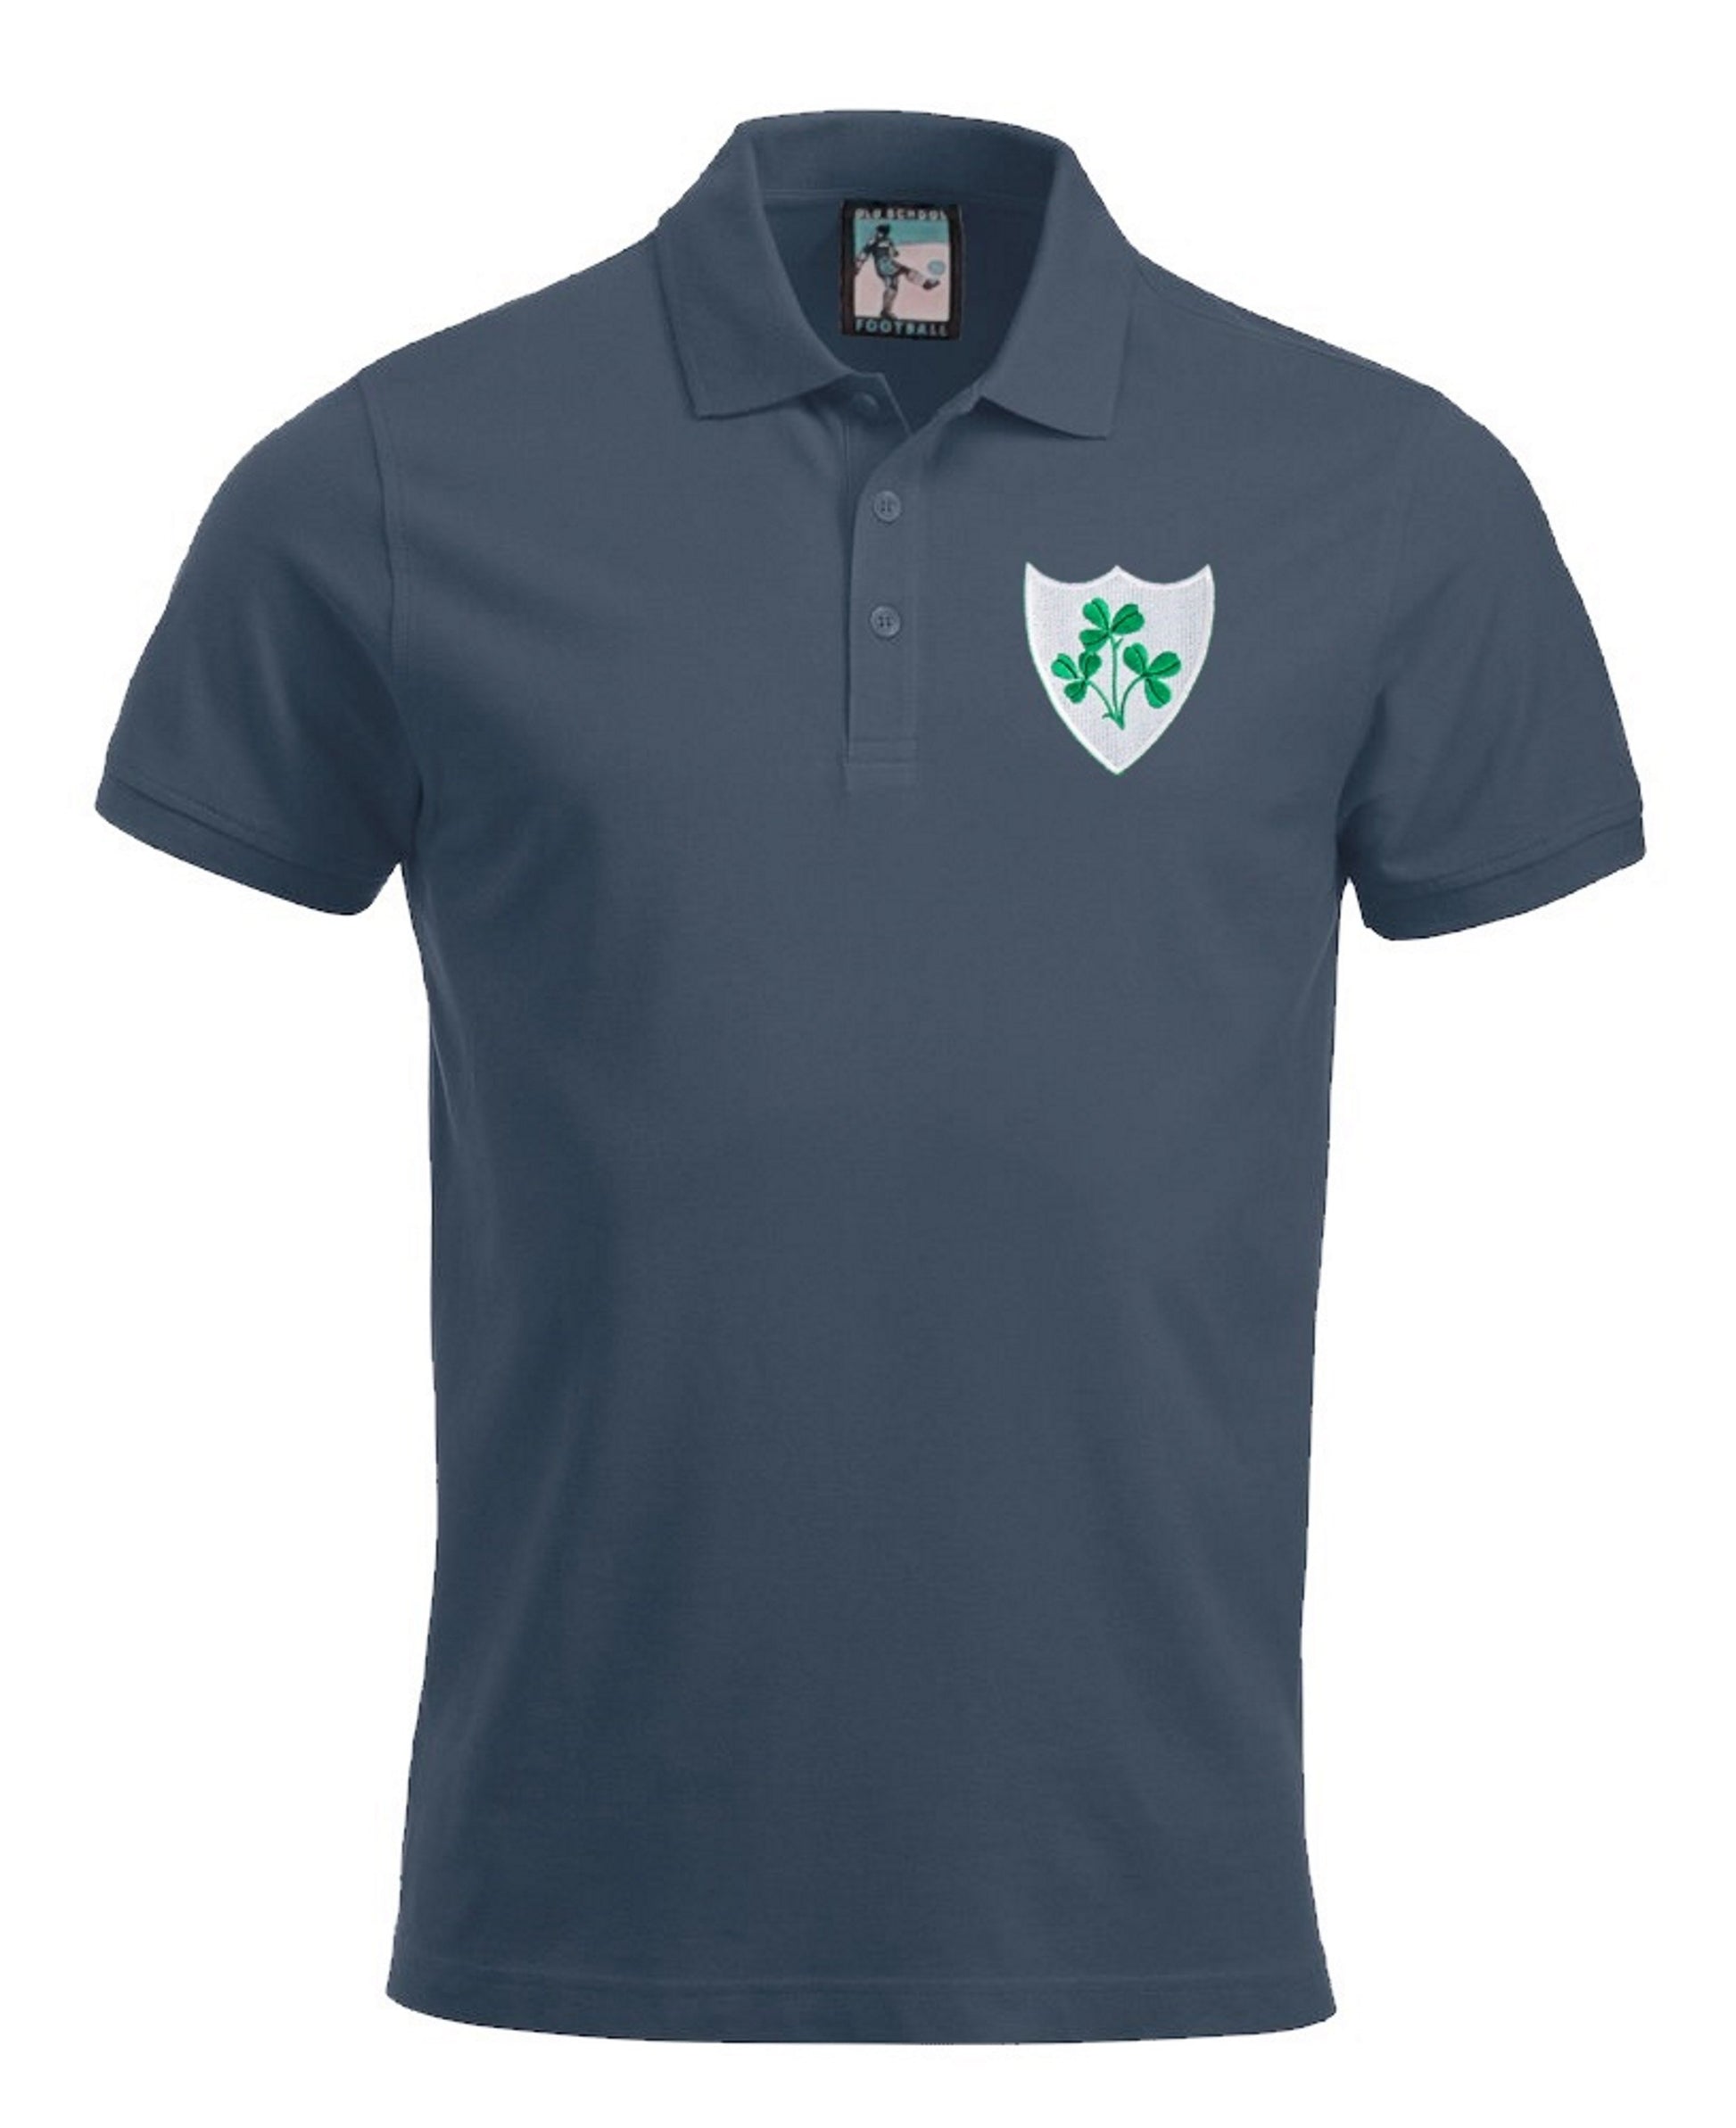 Republic of Ireland Eire Football Polo Shirt - Polo